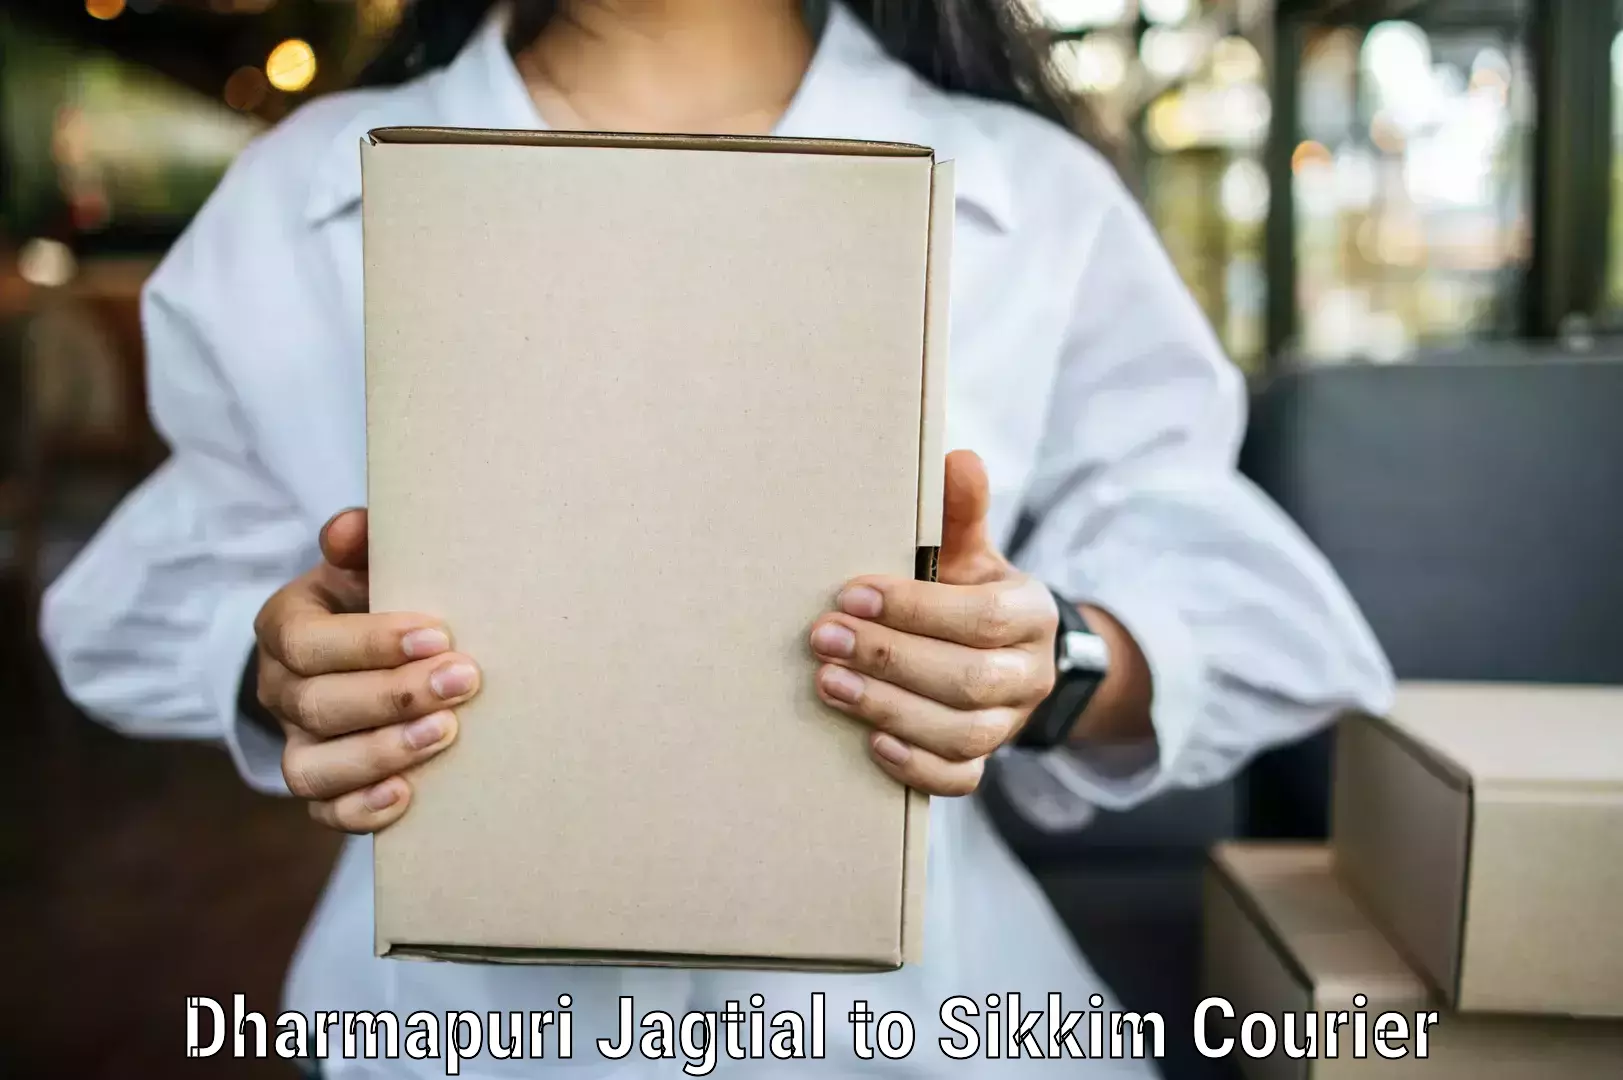 Premium courier solutions Dharmapuri Jagtial to Geyzing